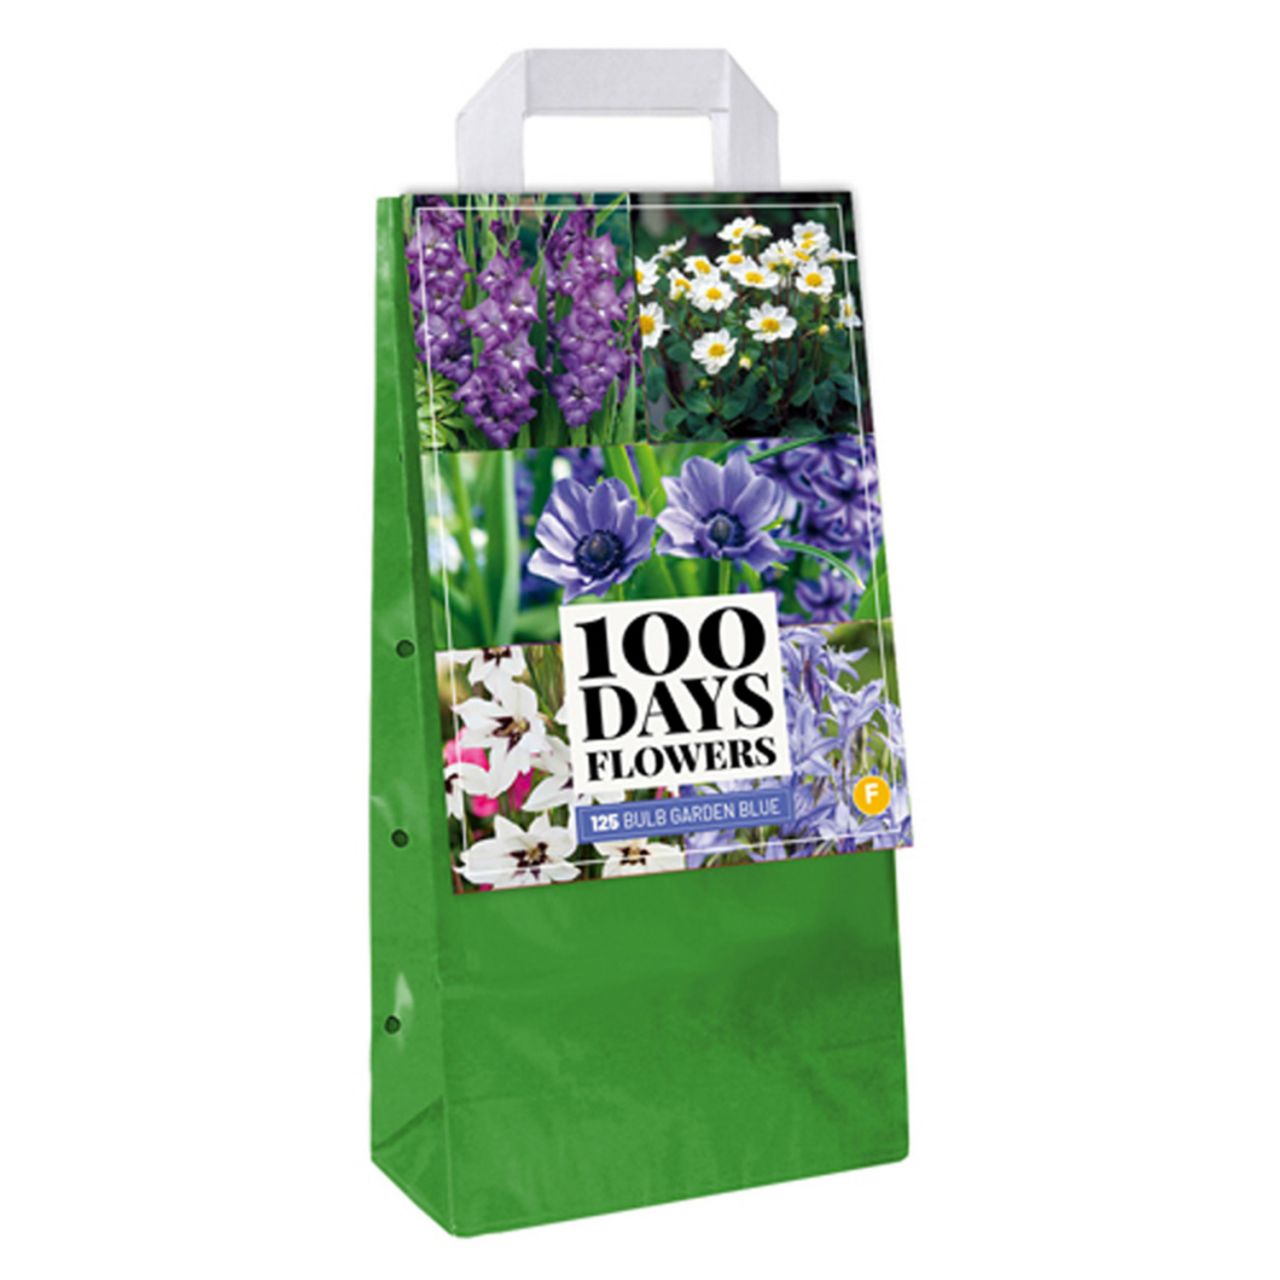 Kategorie <b>Frühlings-Blumenzwiebeln </b> - Sommerblumen-Mischung blau-weiß - 125 Stück - Bulb Garden Bag - Bulb Garden Blue